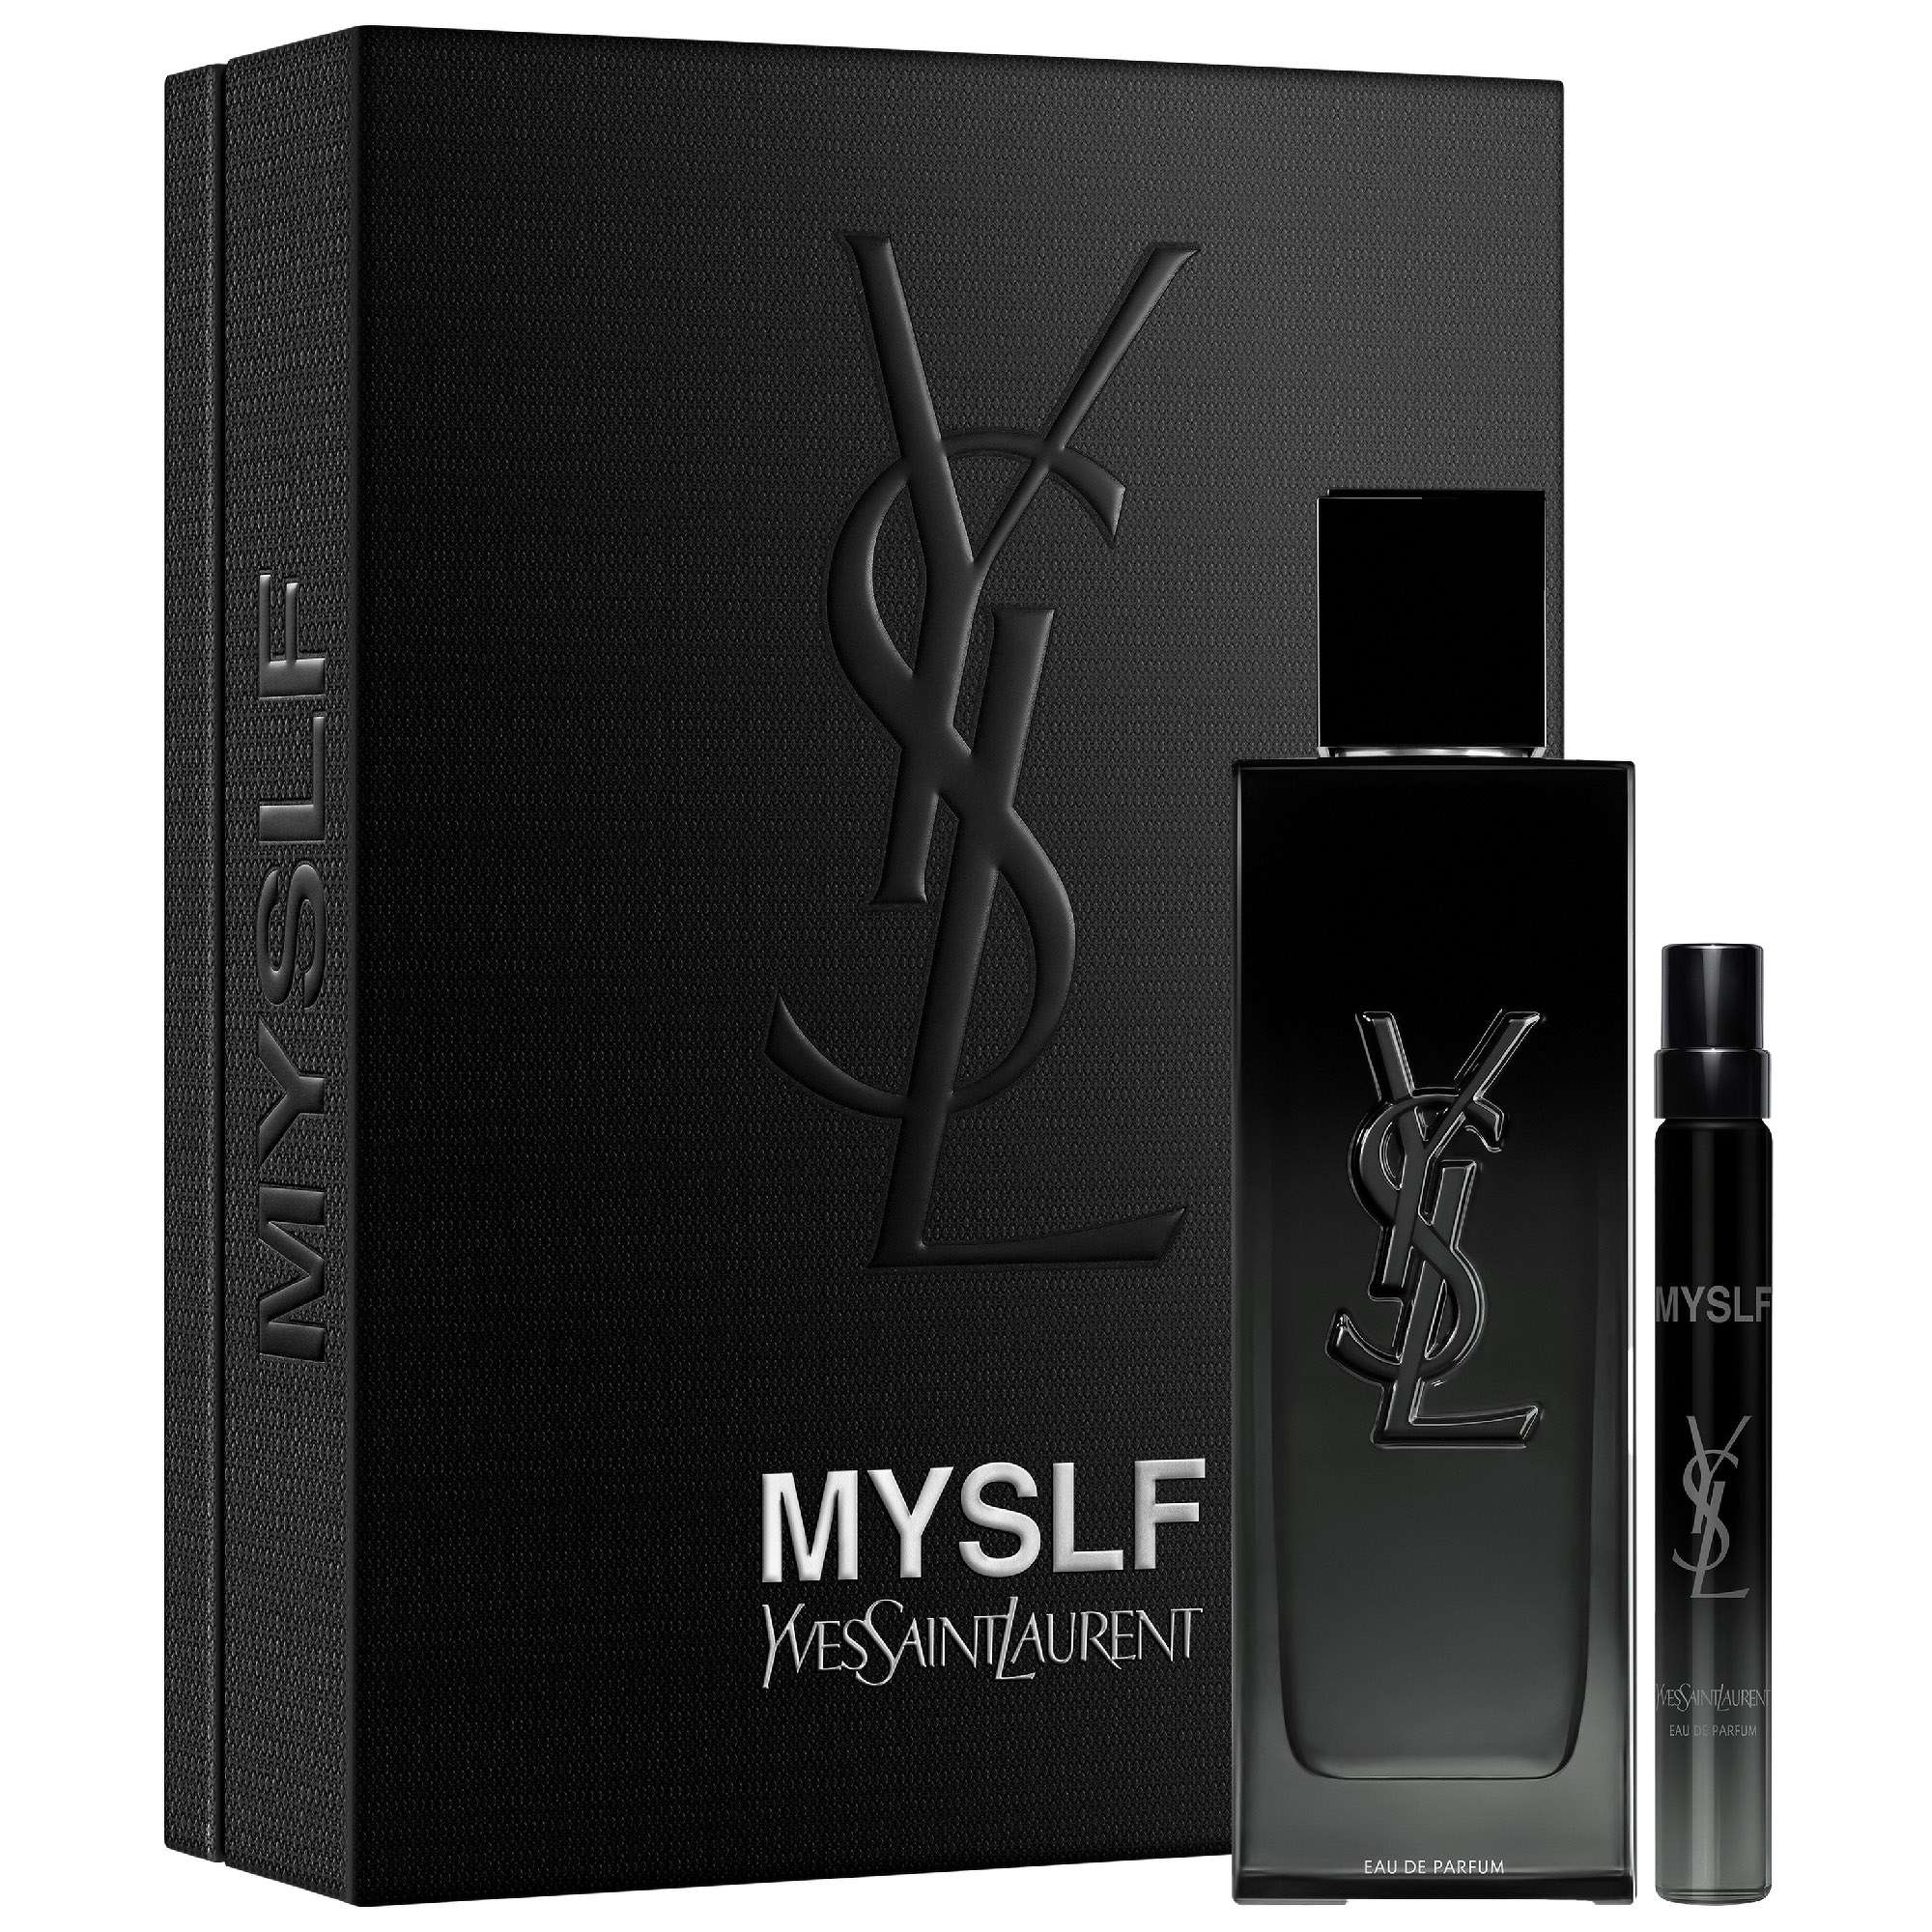 Photos - Women's Fragrance Yves Saint Laurent MYSLF Eau de Parfum 100ml Gift Set 